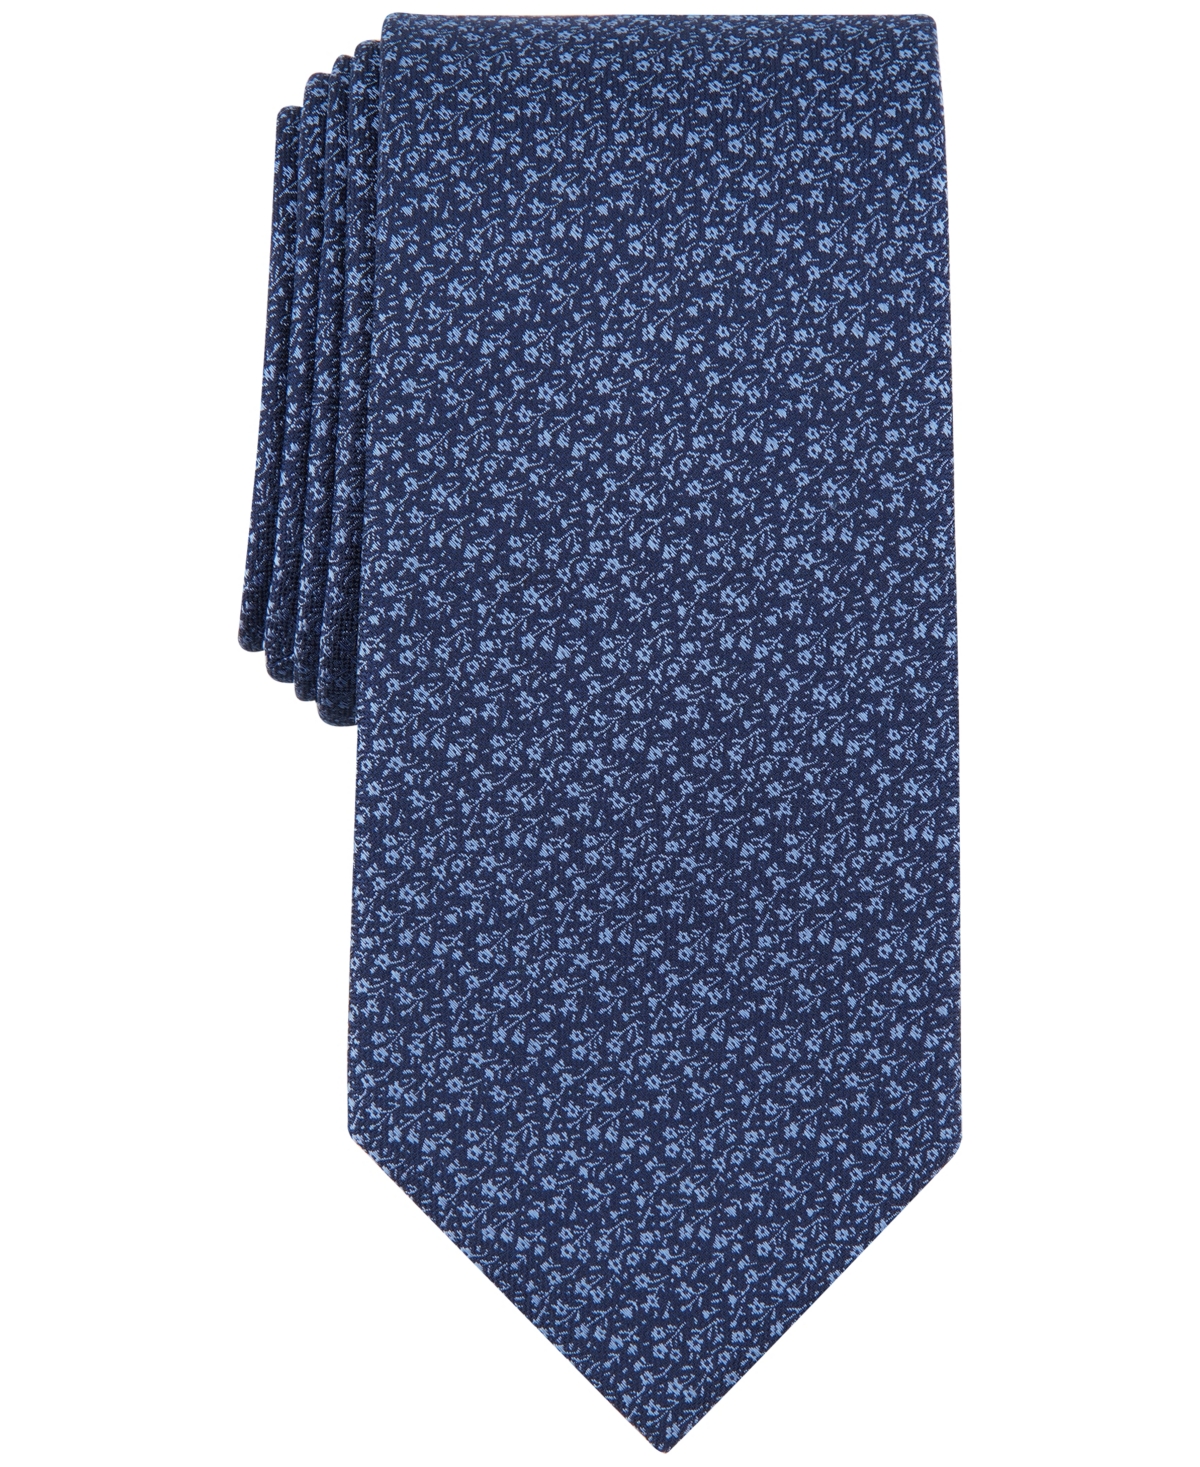 Michael Kors Men's Weaver Floral Tie In Navy